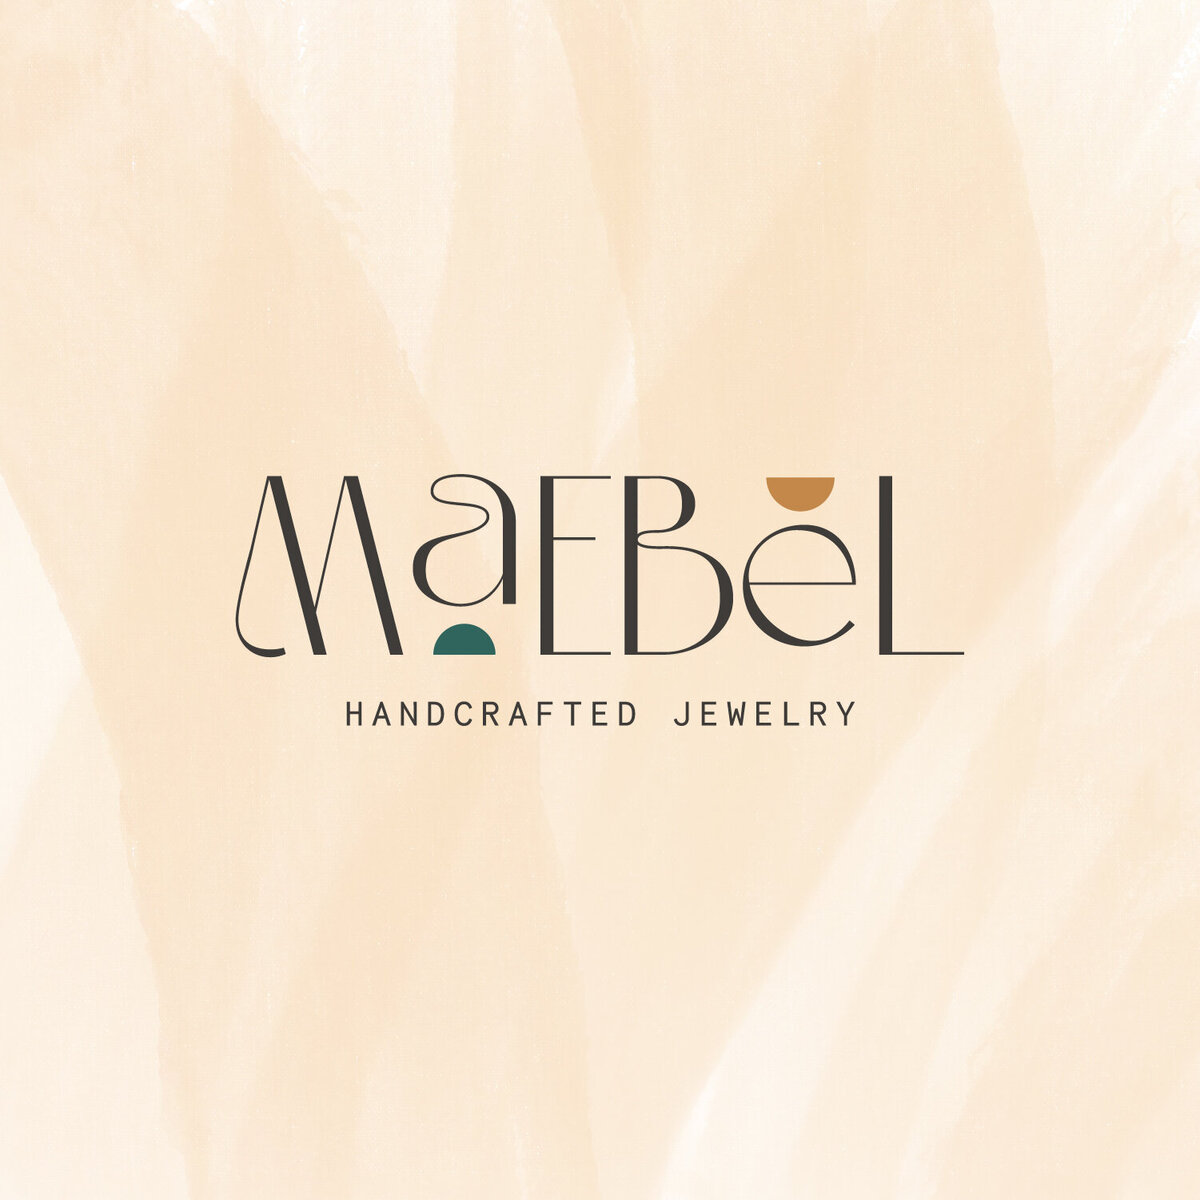 Maebel Social Media Graphics-09